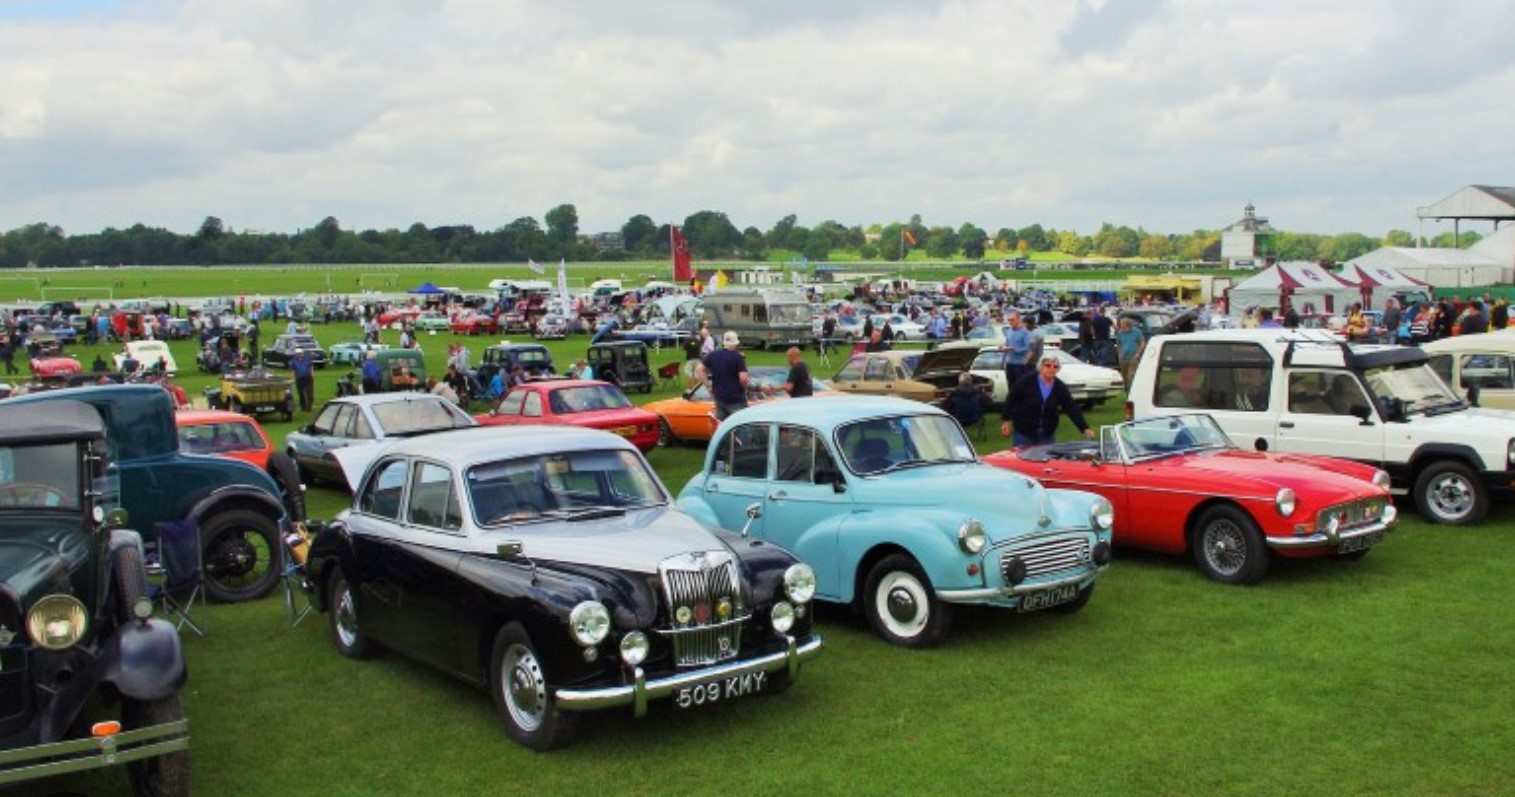 Vintage Car Club Event - Details TBC